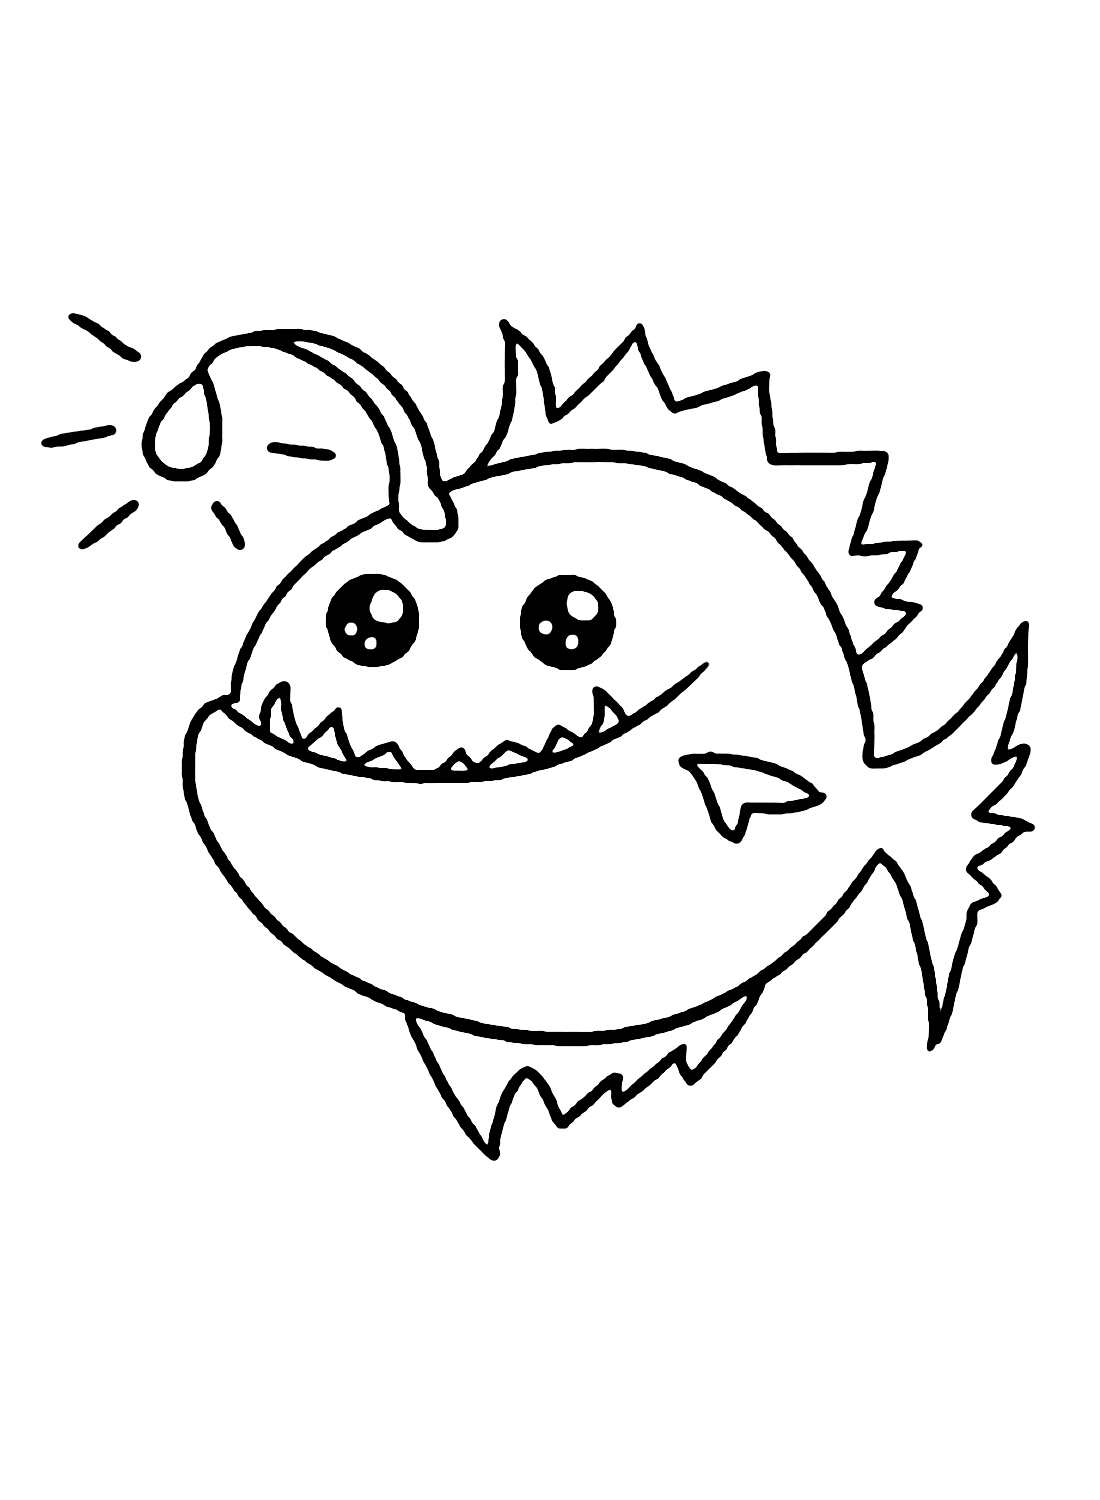 Anglerfisch-Cartoon von Anglerfish